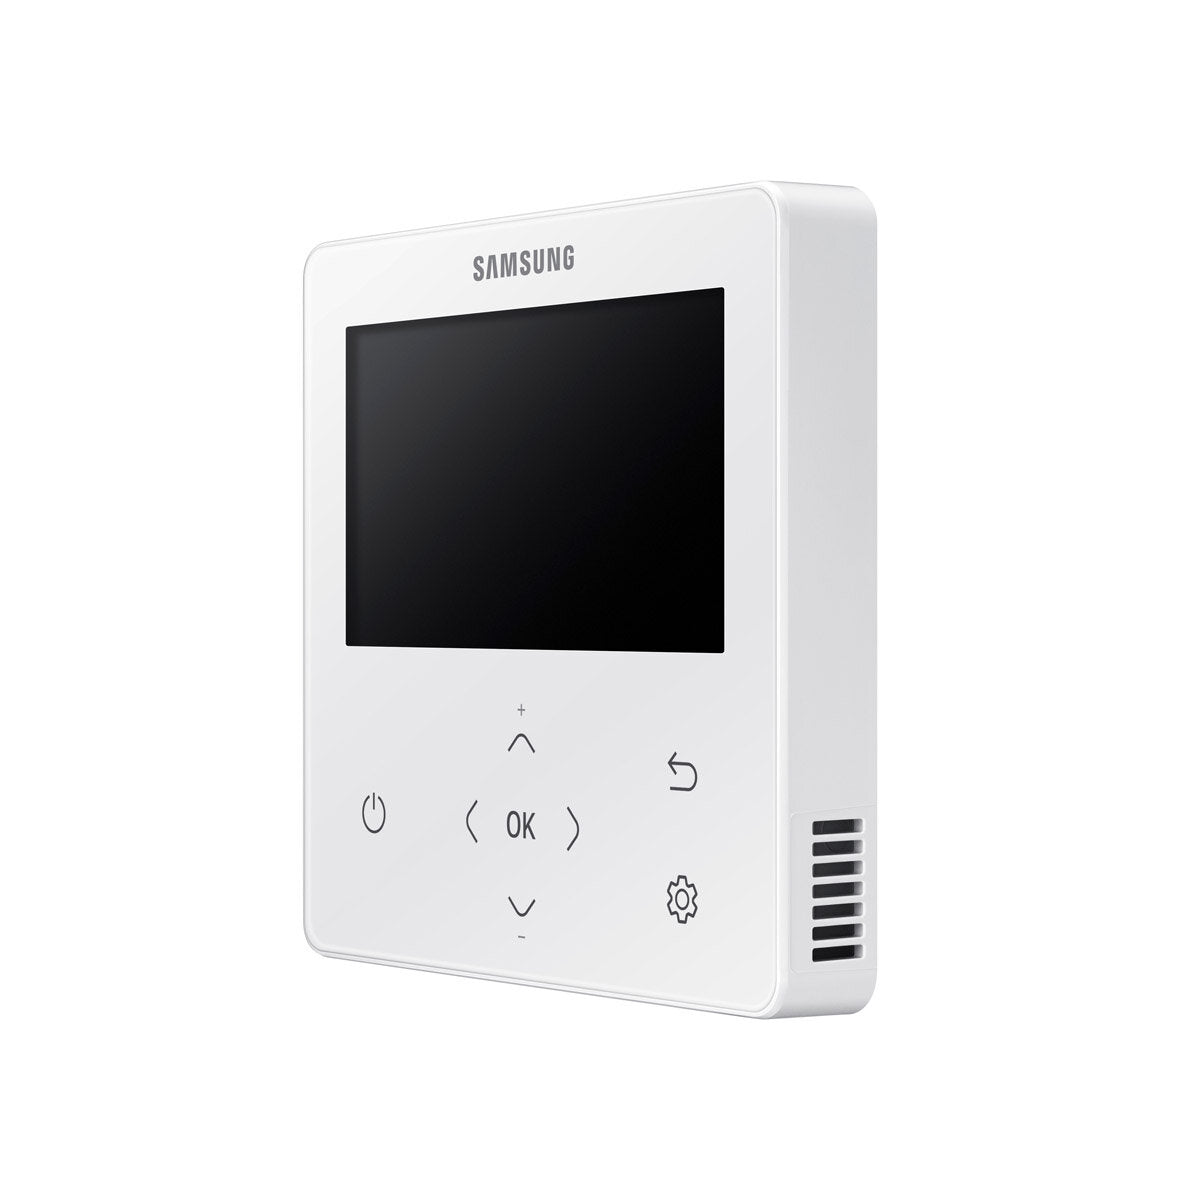 Samsung Air conditioner Windfree 4-way penta split 9000 + 9000 + 9000 + 12000 + 12000 BTU inverter A ++ outdoor unit 10.0 kW